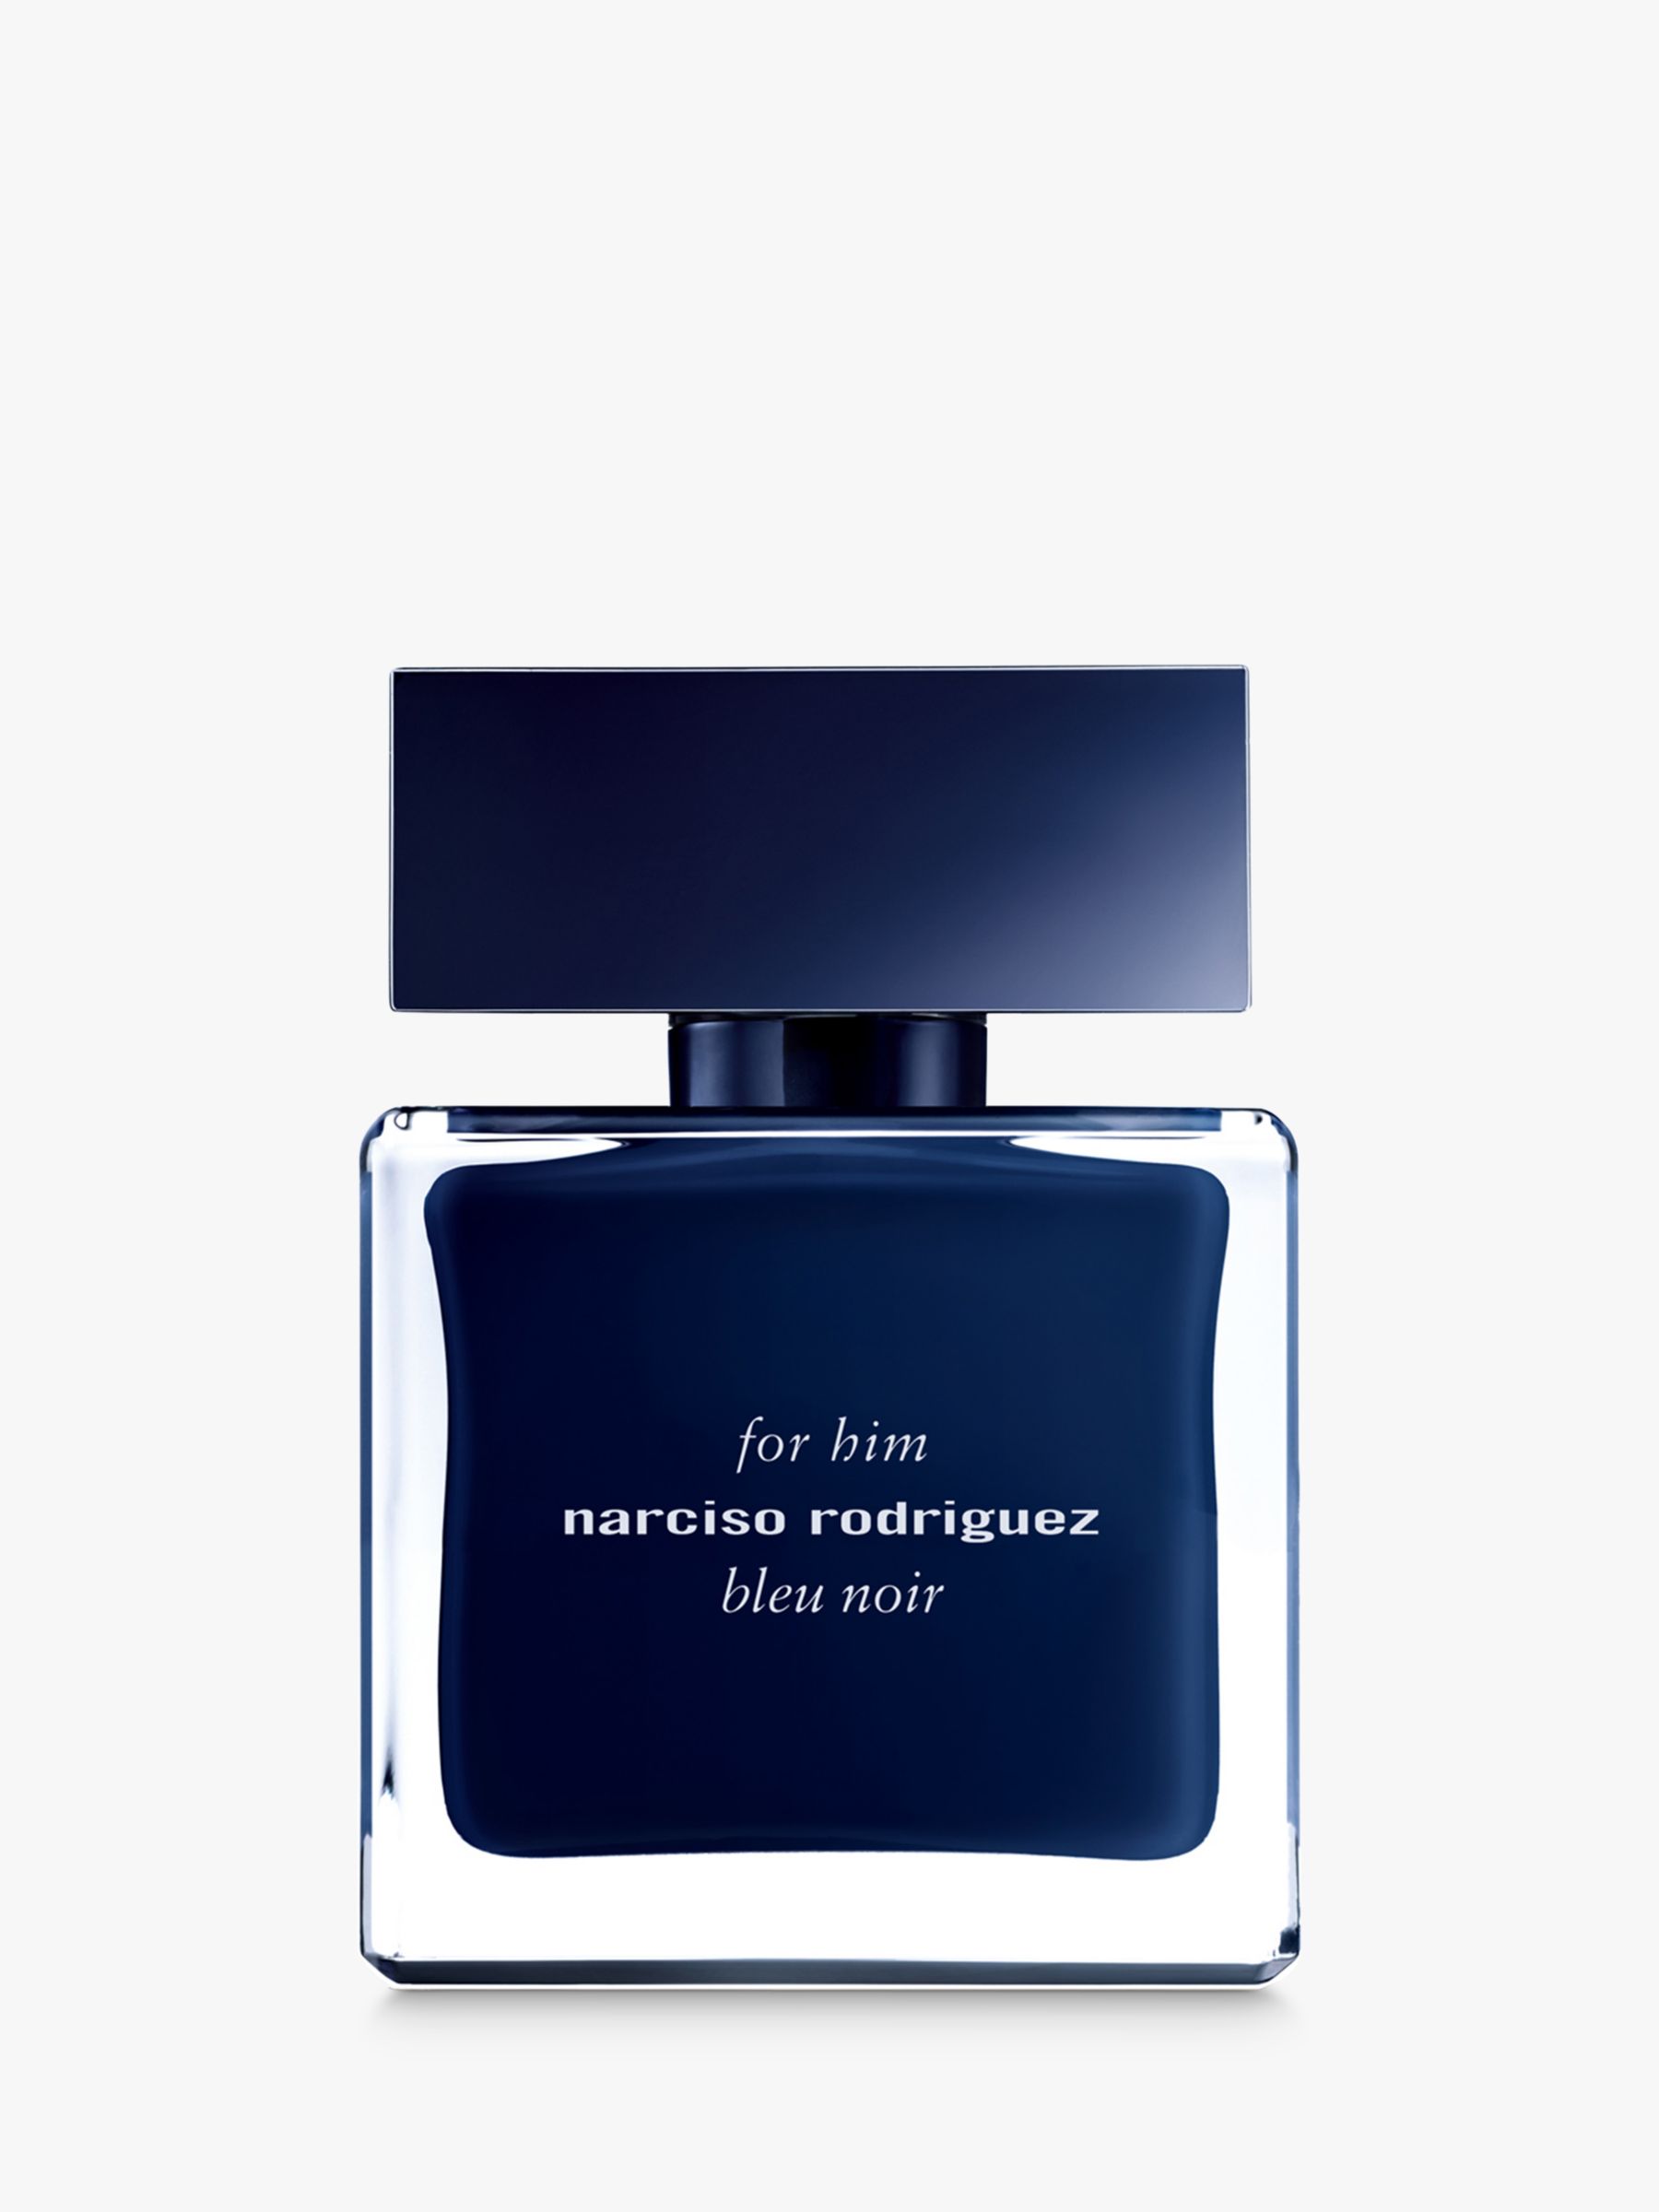 Narciso Rodriguez For Him Bleu Noir Eau de Toilette, 50ml at John